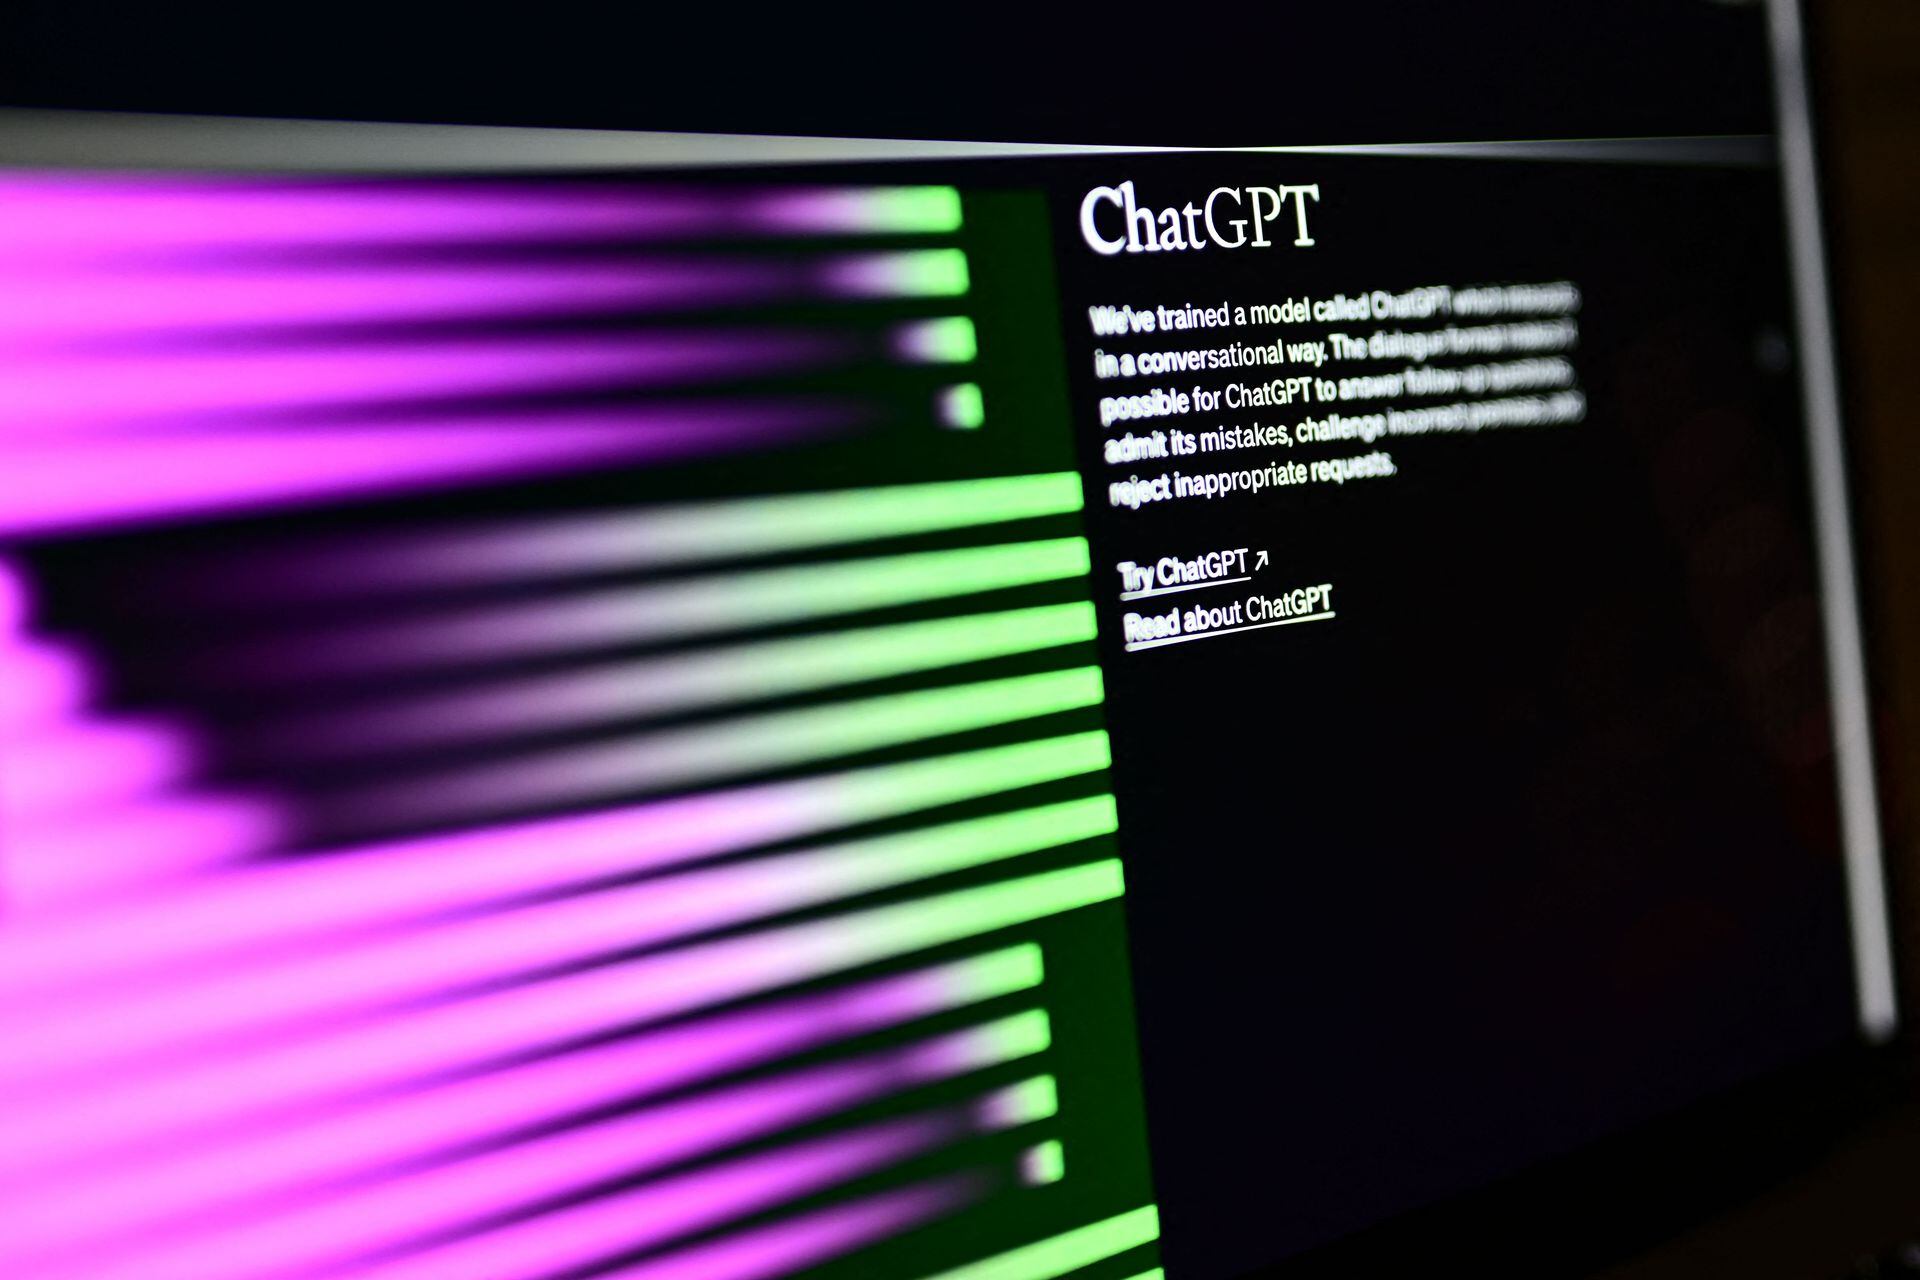 Una pantalla de computadora con la página de inicio del sitio web de inteligencia artificial OpenAI, mostrando su robot chatGPT.